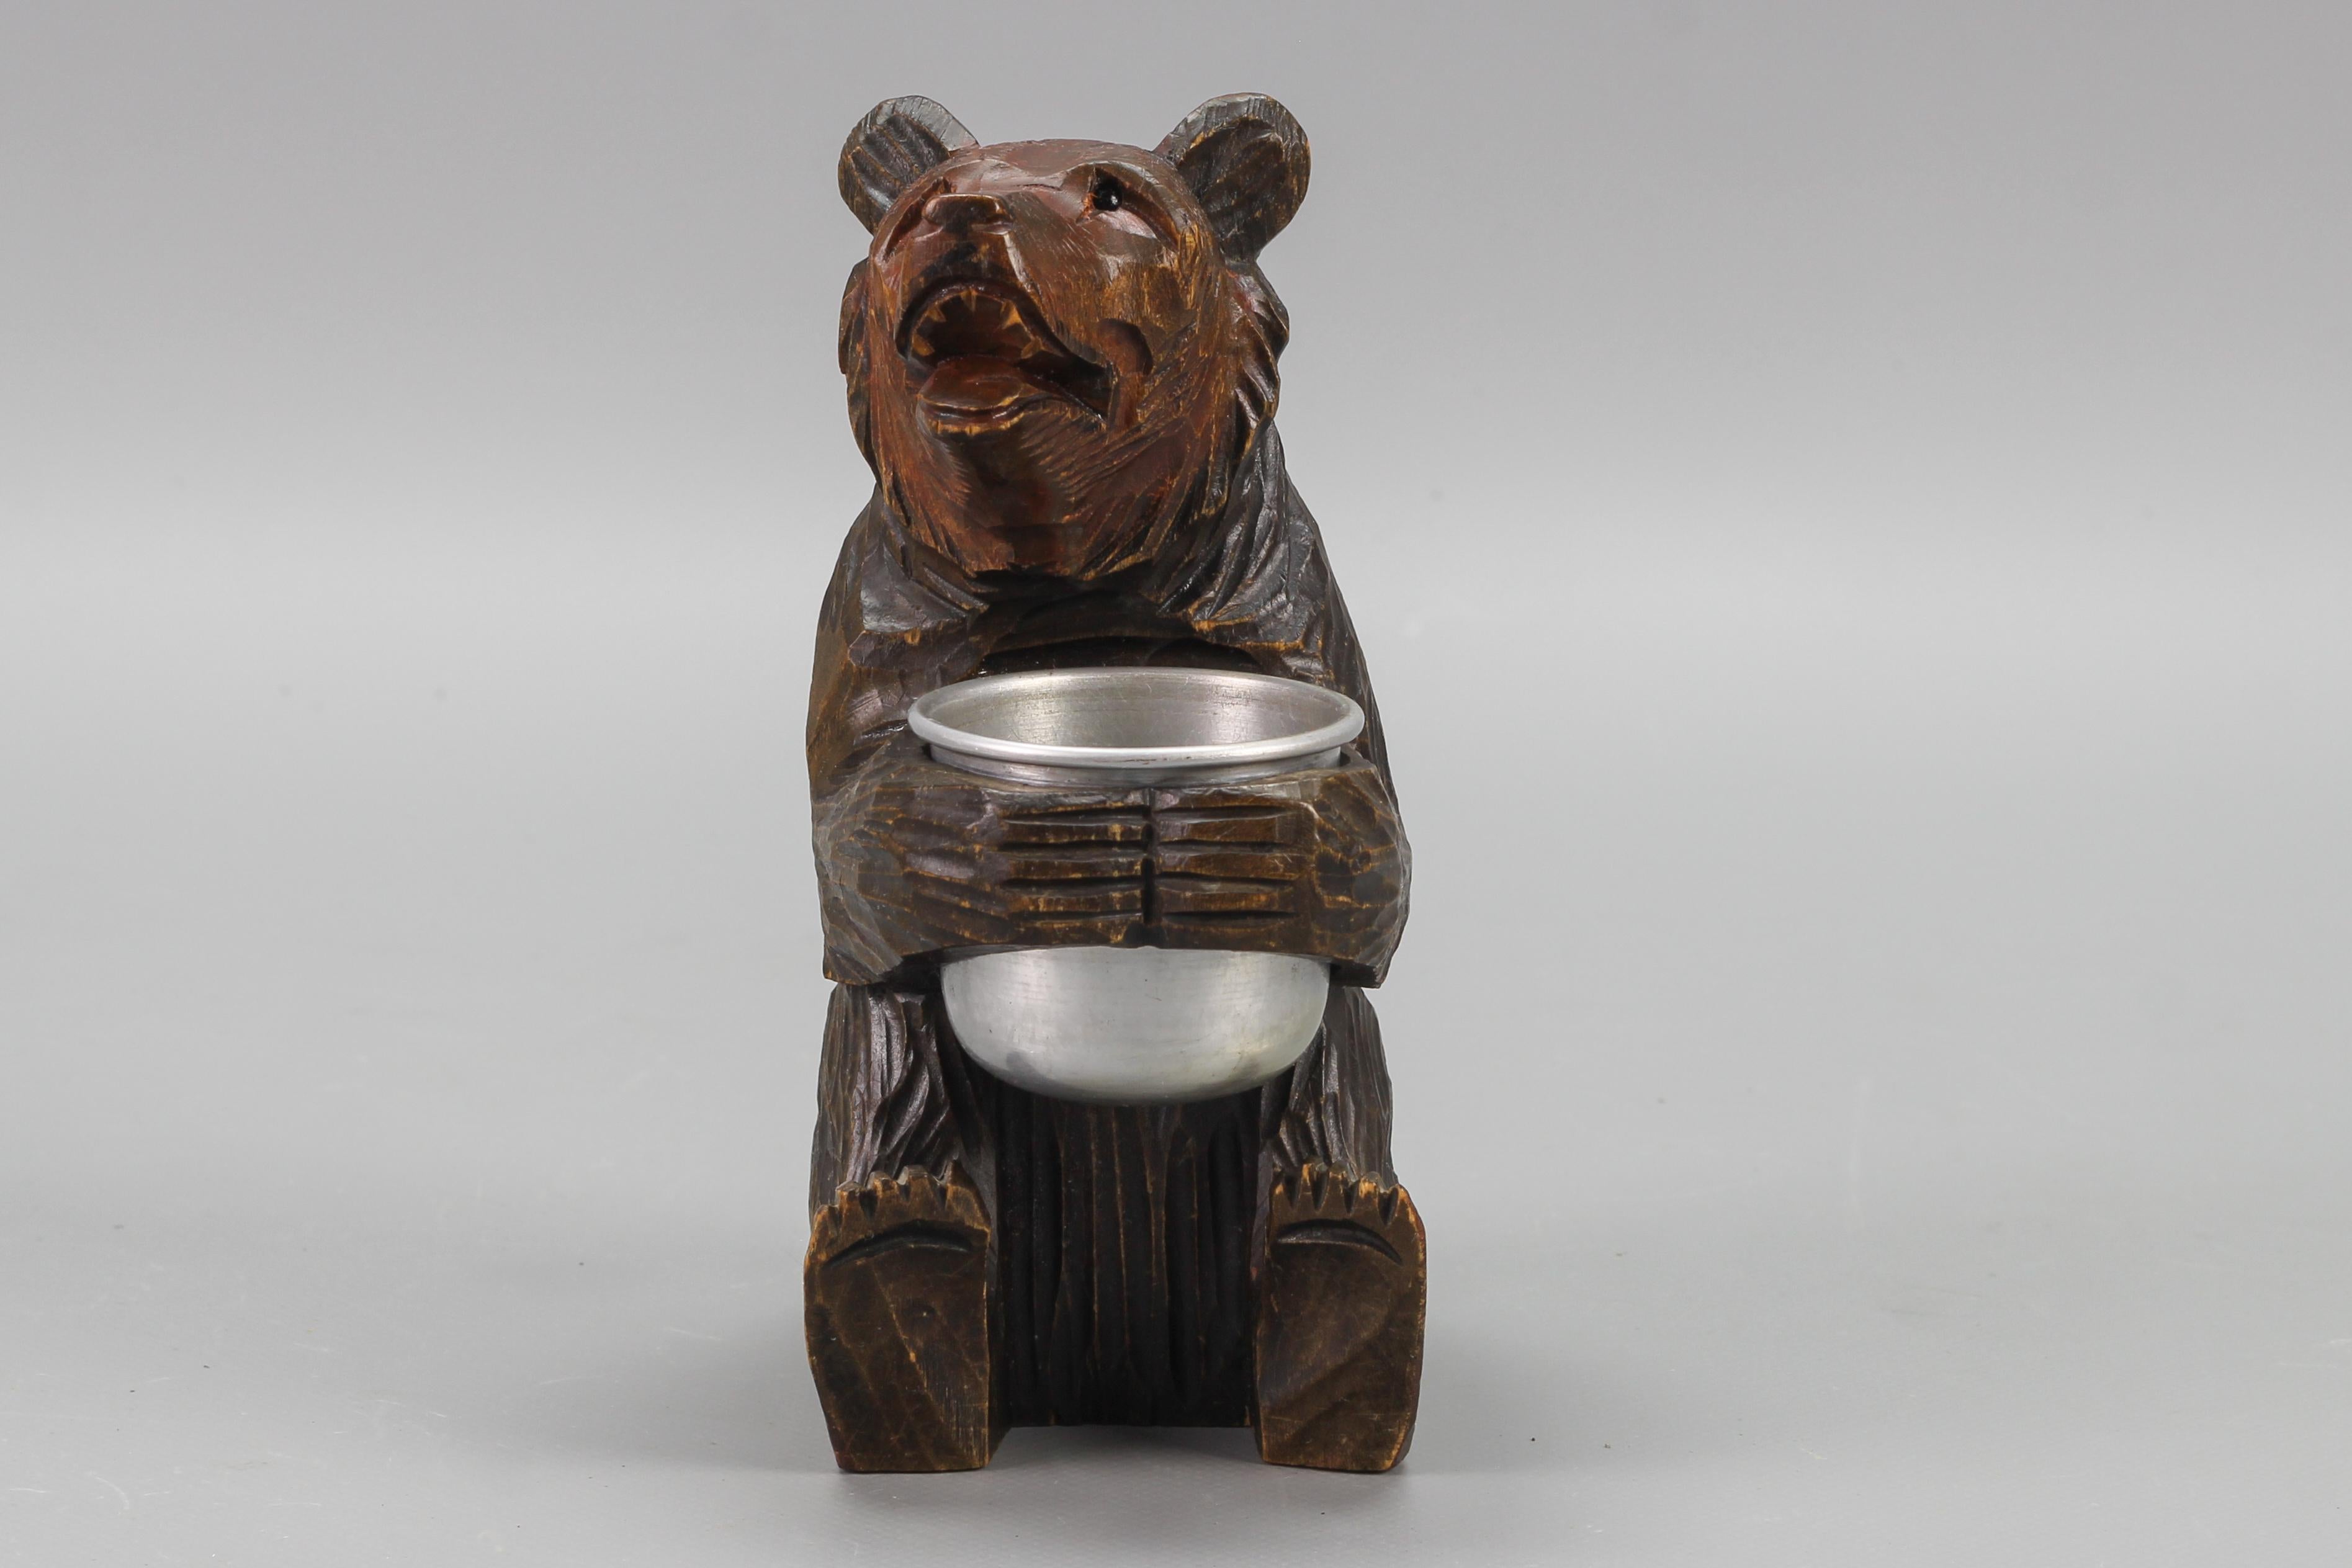 Ours de style Forêt Noire sculpté à la main avec pot en aluminium, datant des années 1920 environ.
Ce magnifique ours assis en bois de tilleul sculpté à la main tient un pot en aluminium. Joliment détaillé, avec des yeux de verre.
Peut être utilisé